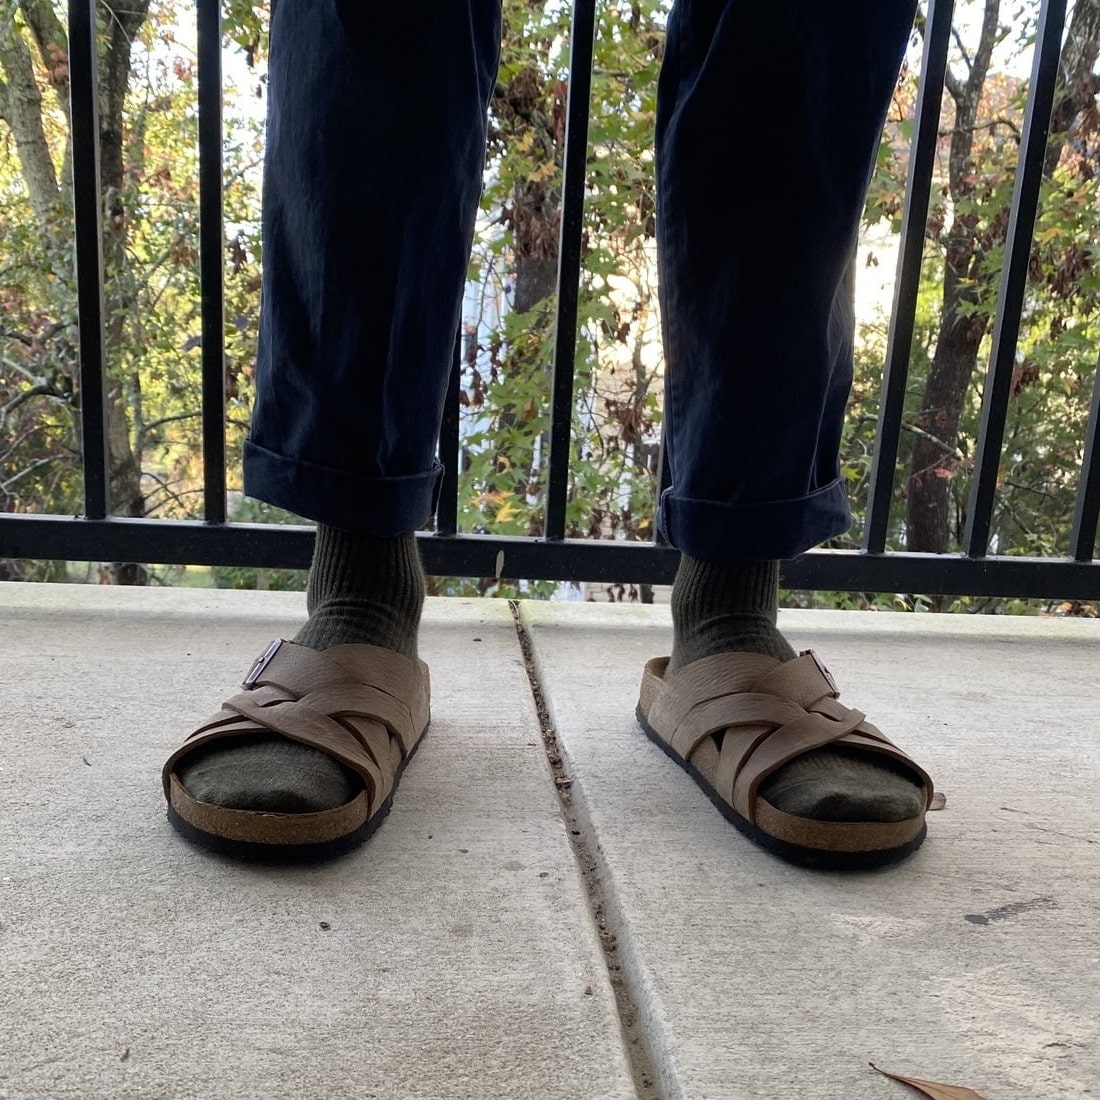 Men Sandals